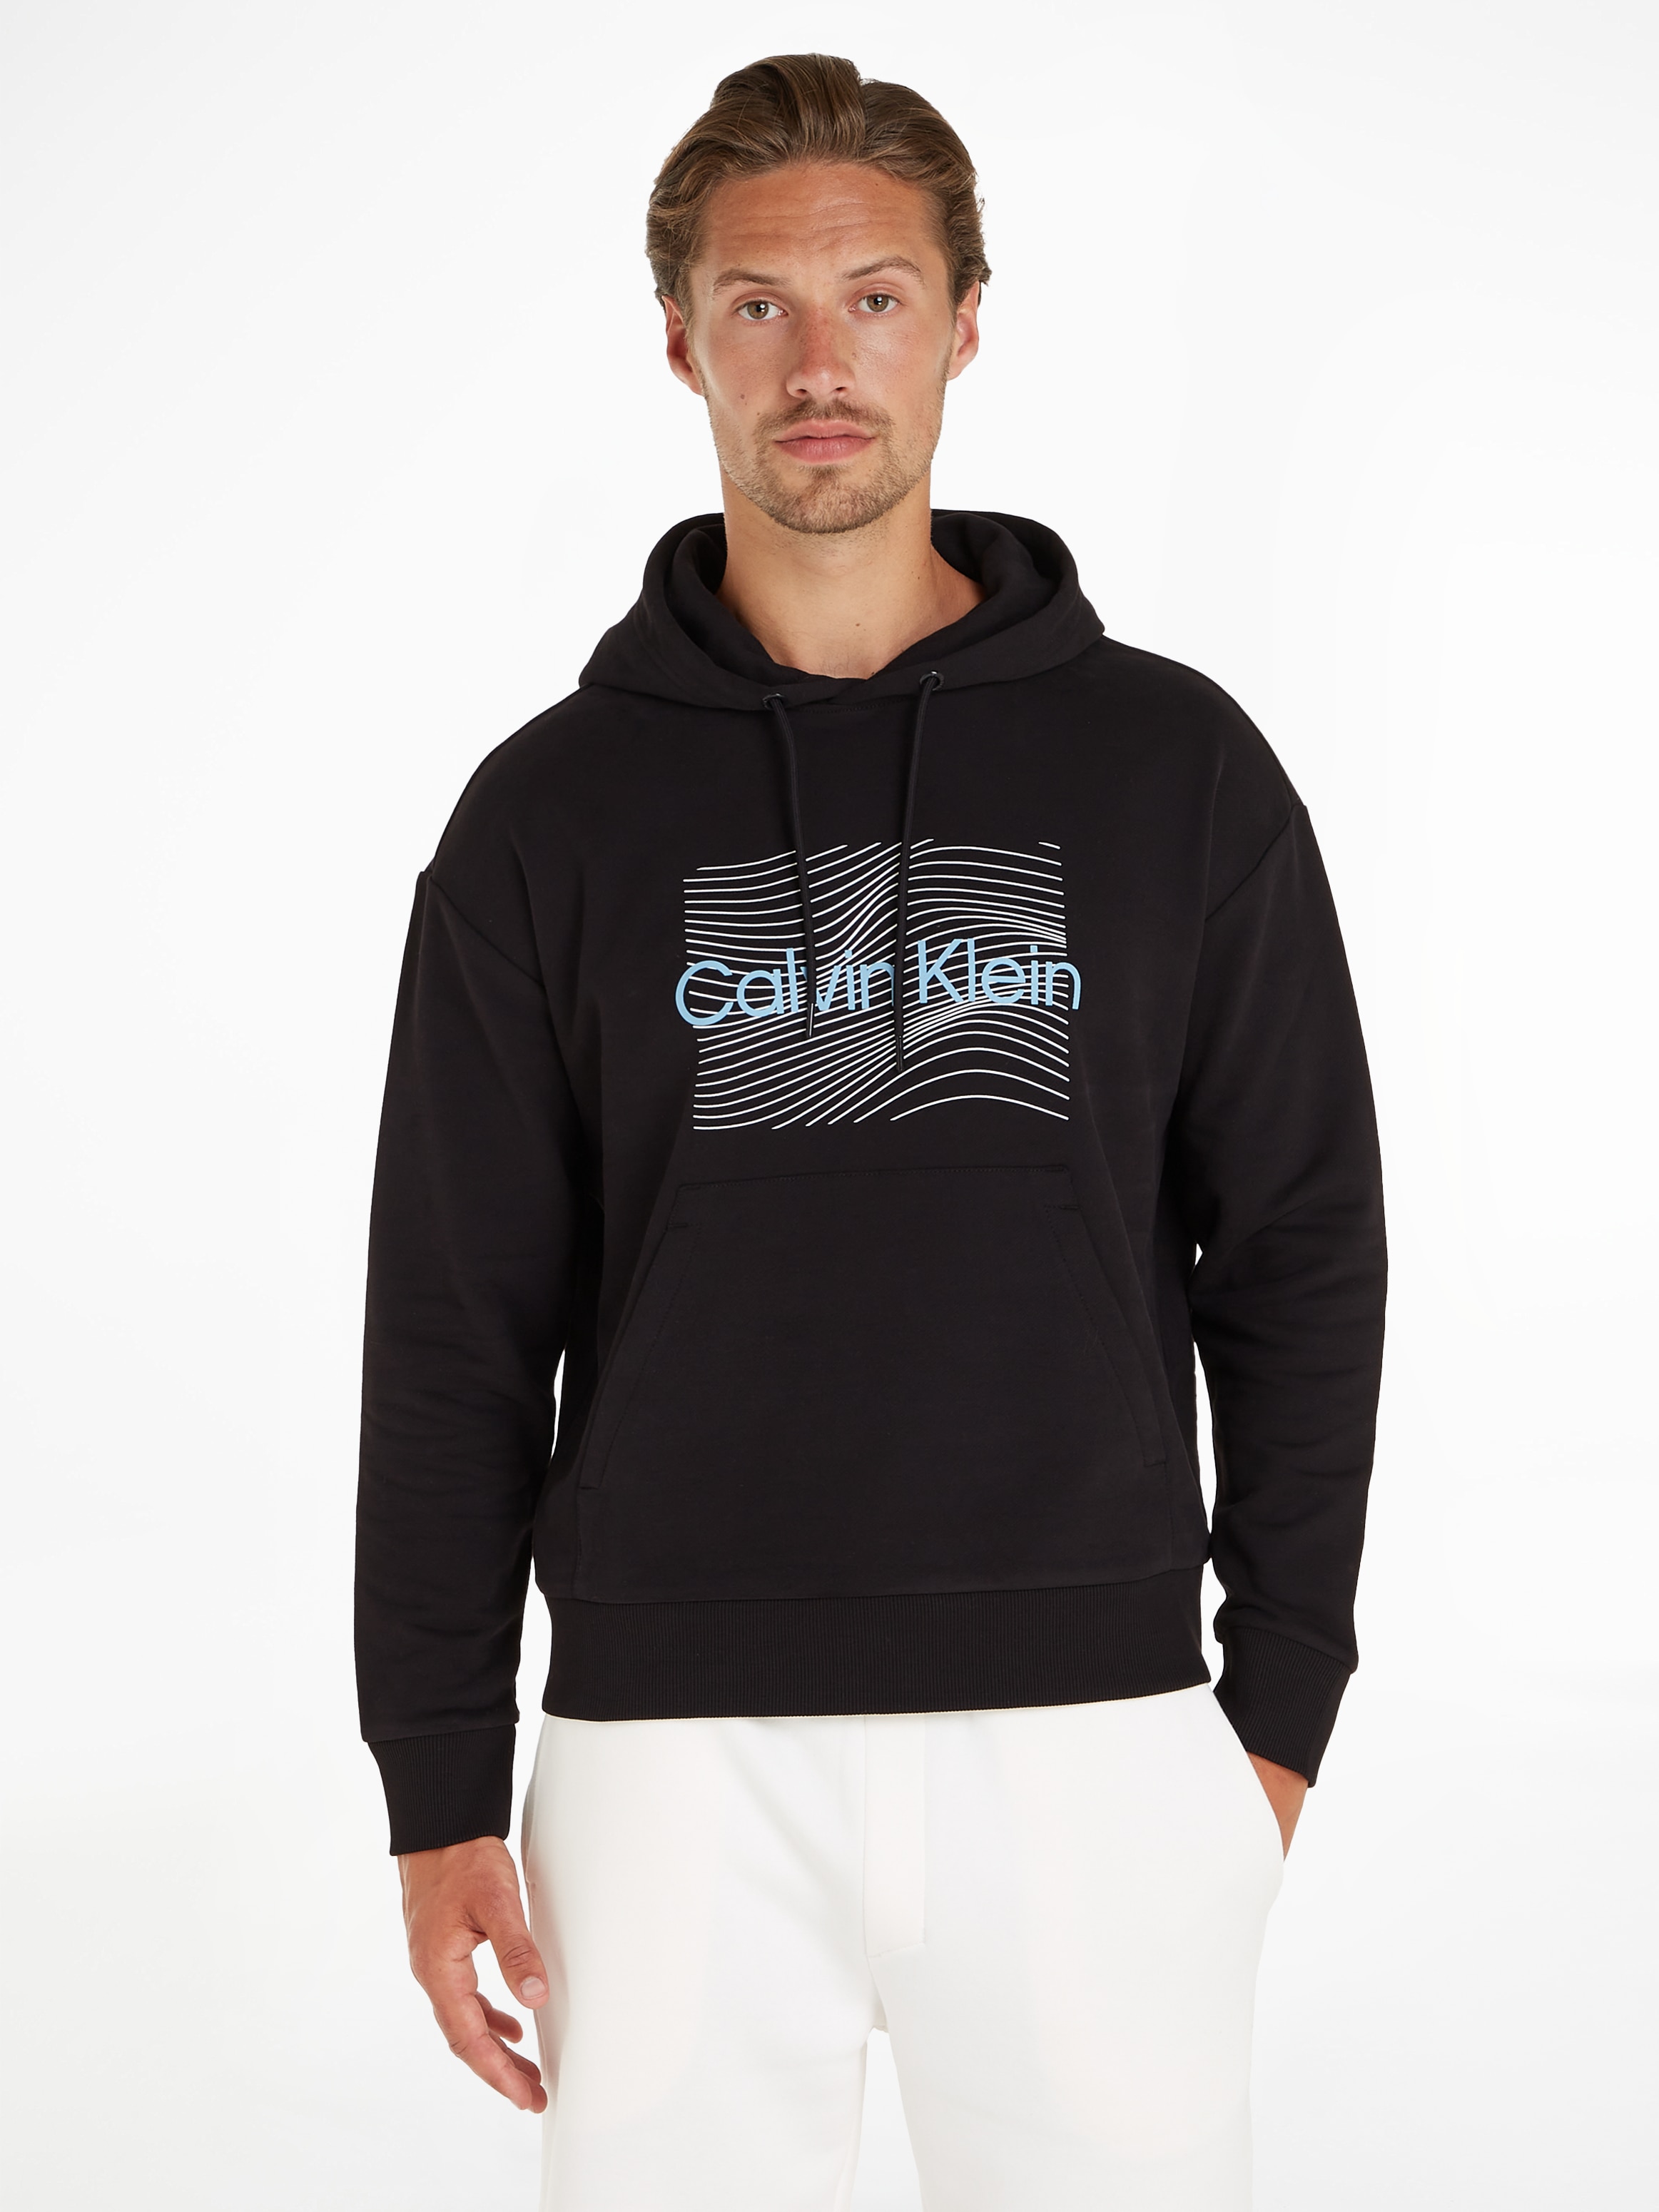 Calvin Klein LINES HOODIE«, mit Kapuzensweatshirt LOGO »WAVE Markenlabel bei HERO OTTO bestellen